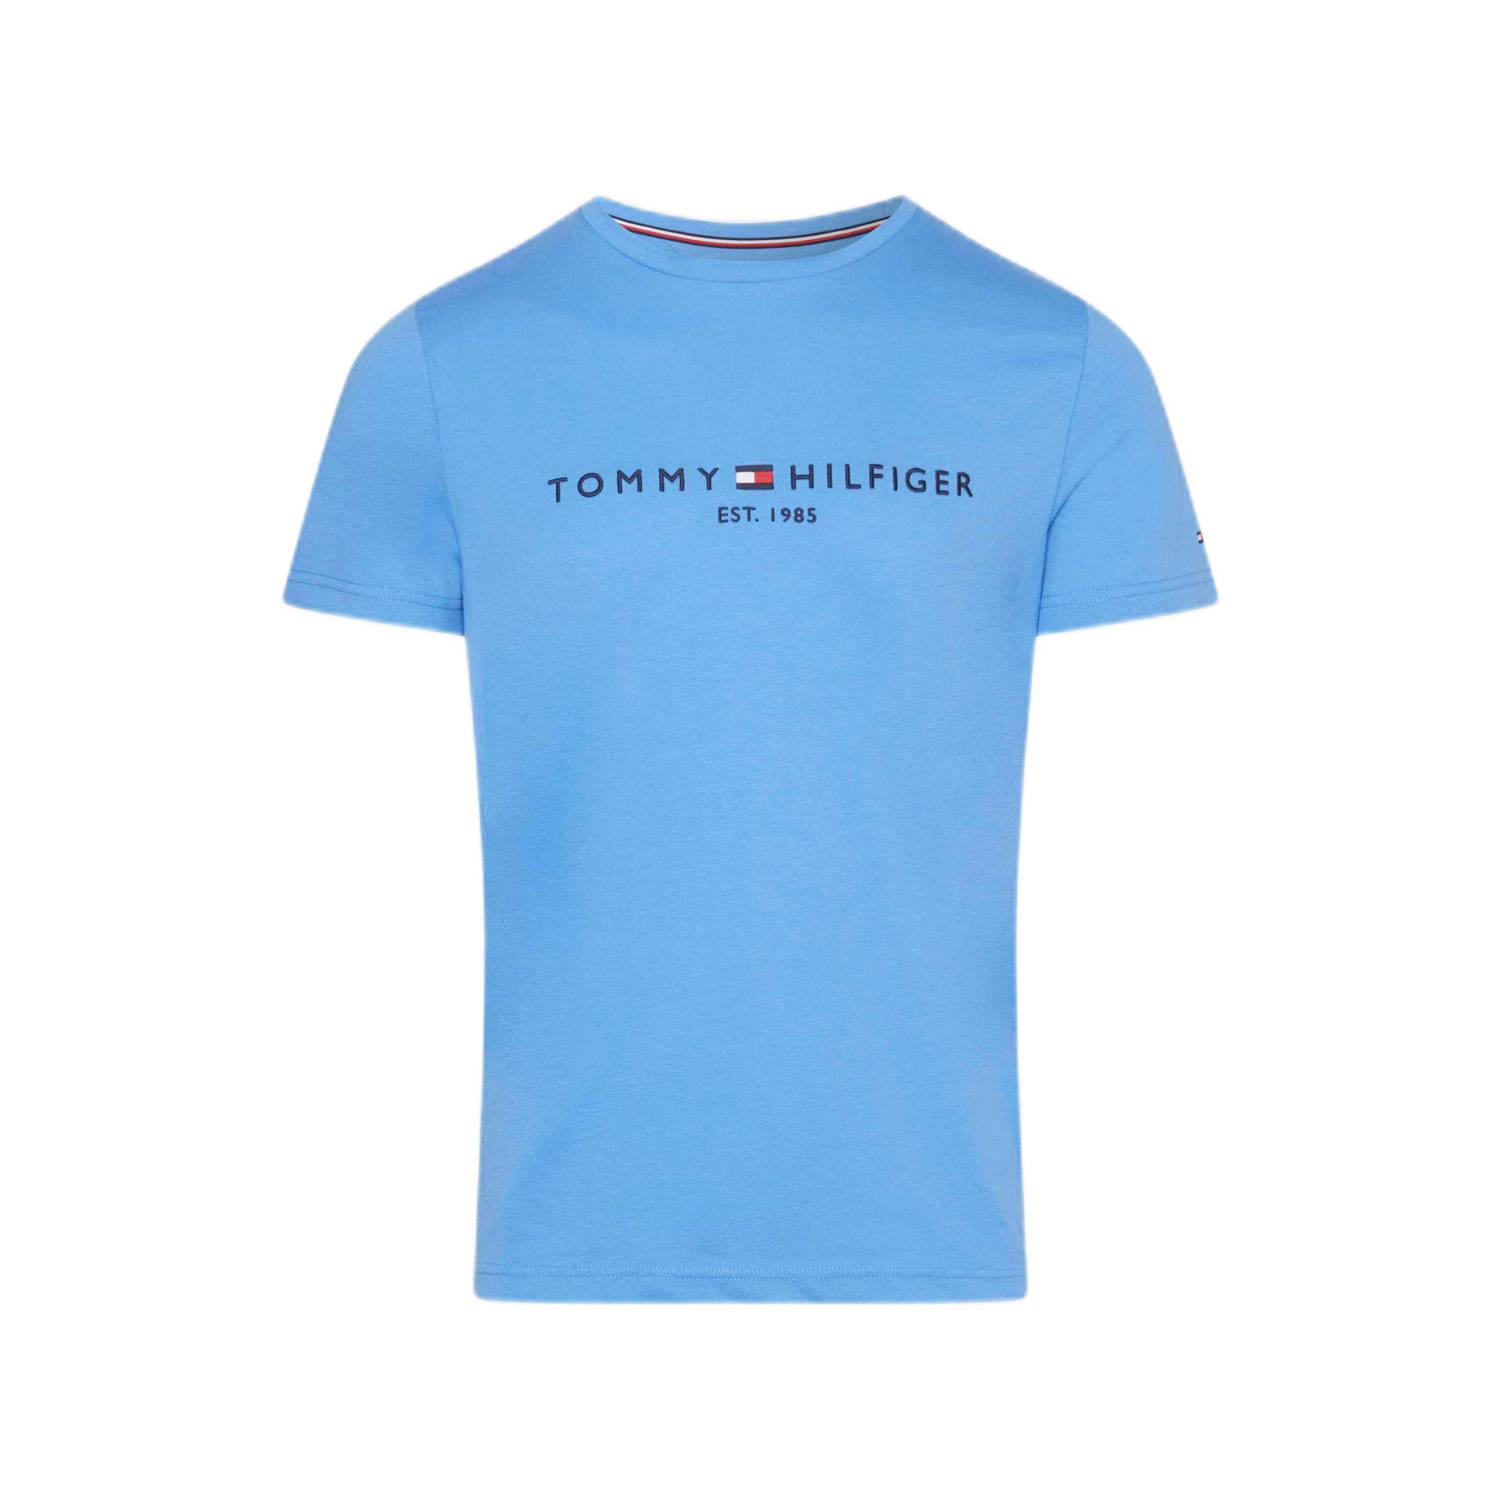 Tommy Hilfiger T-shirt met logo blue spell